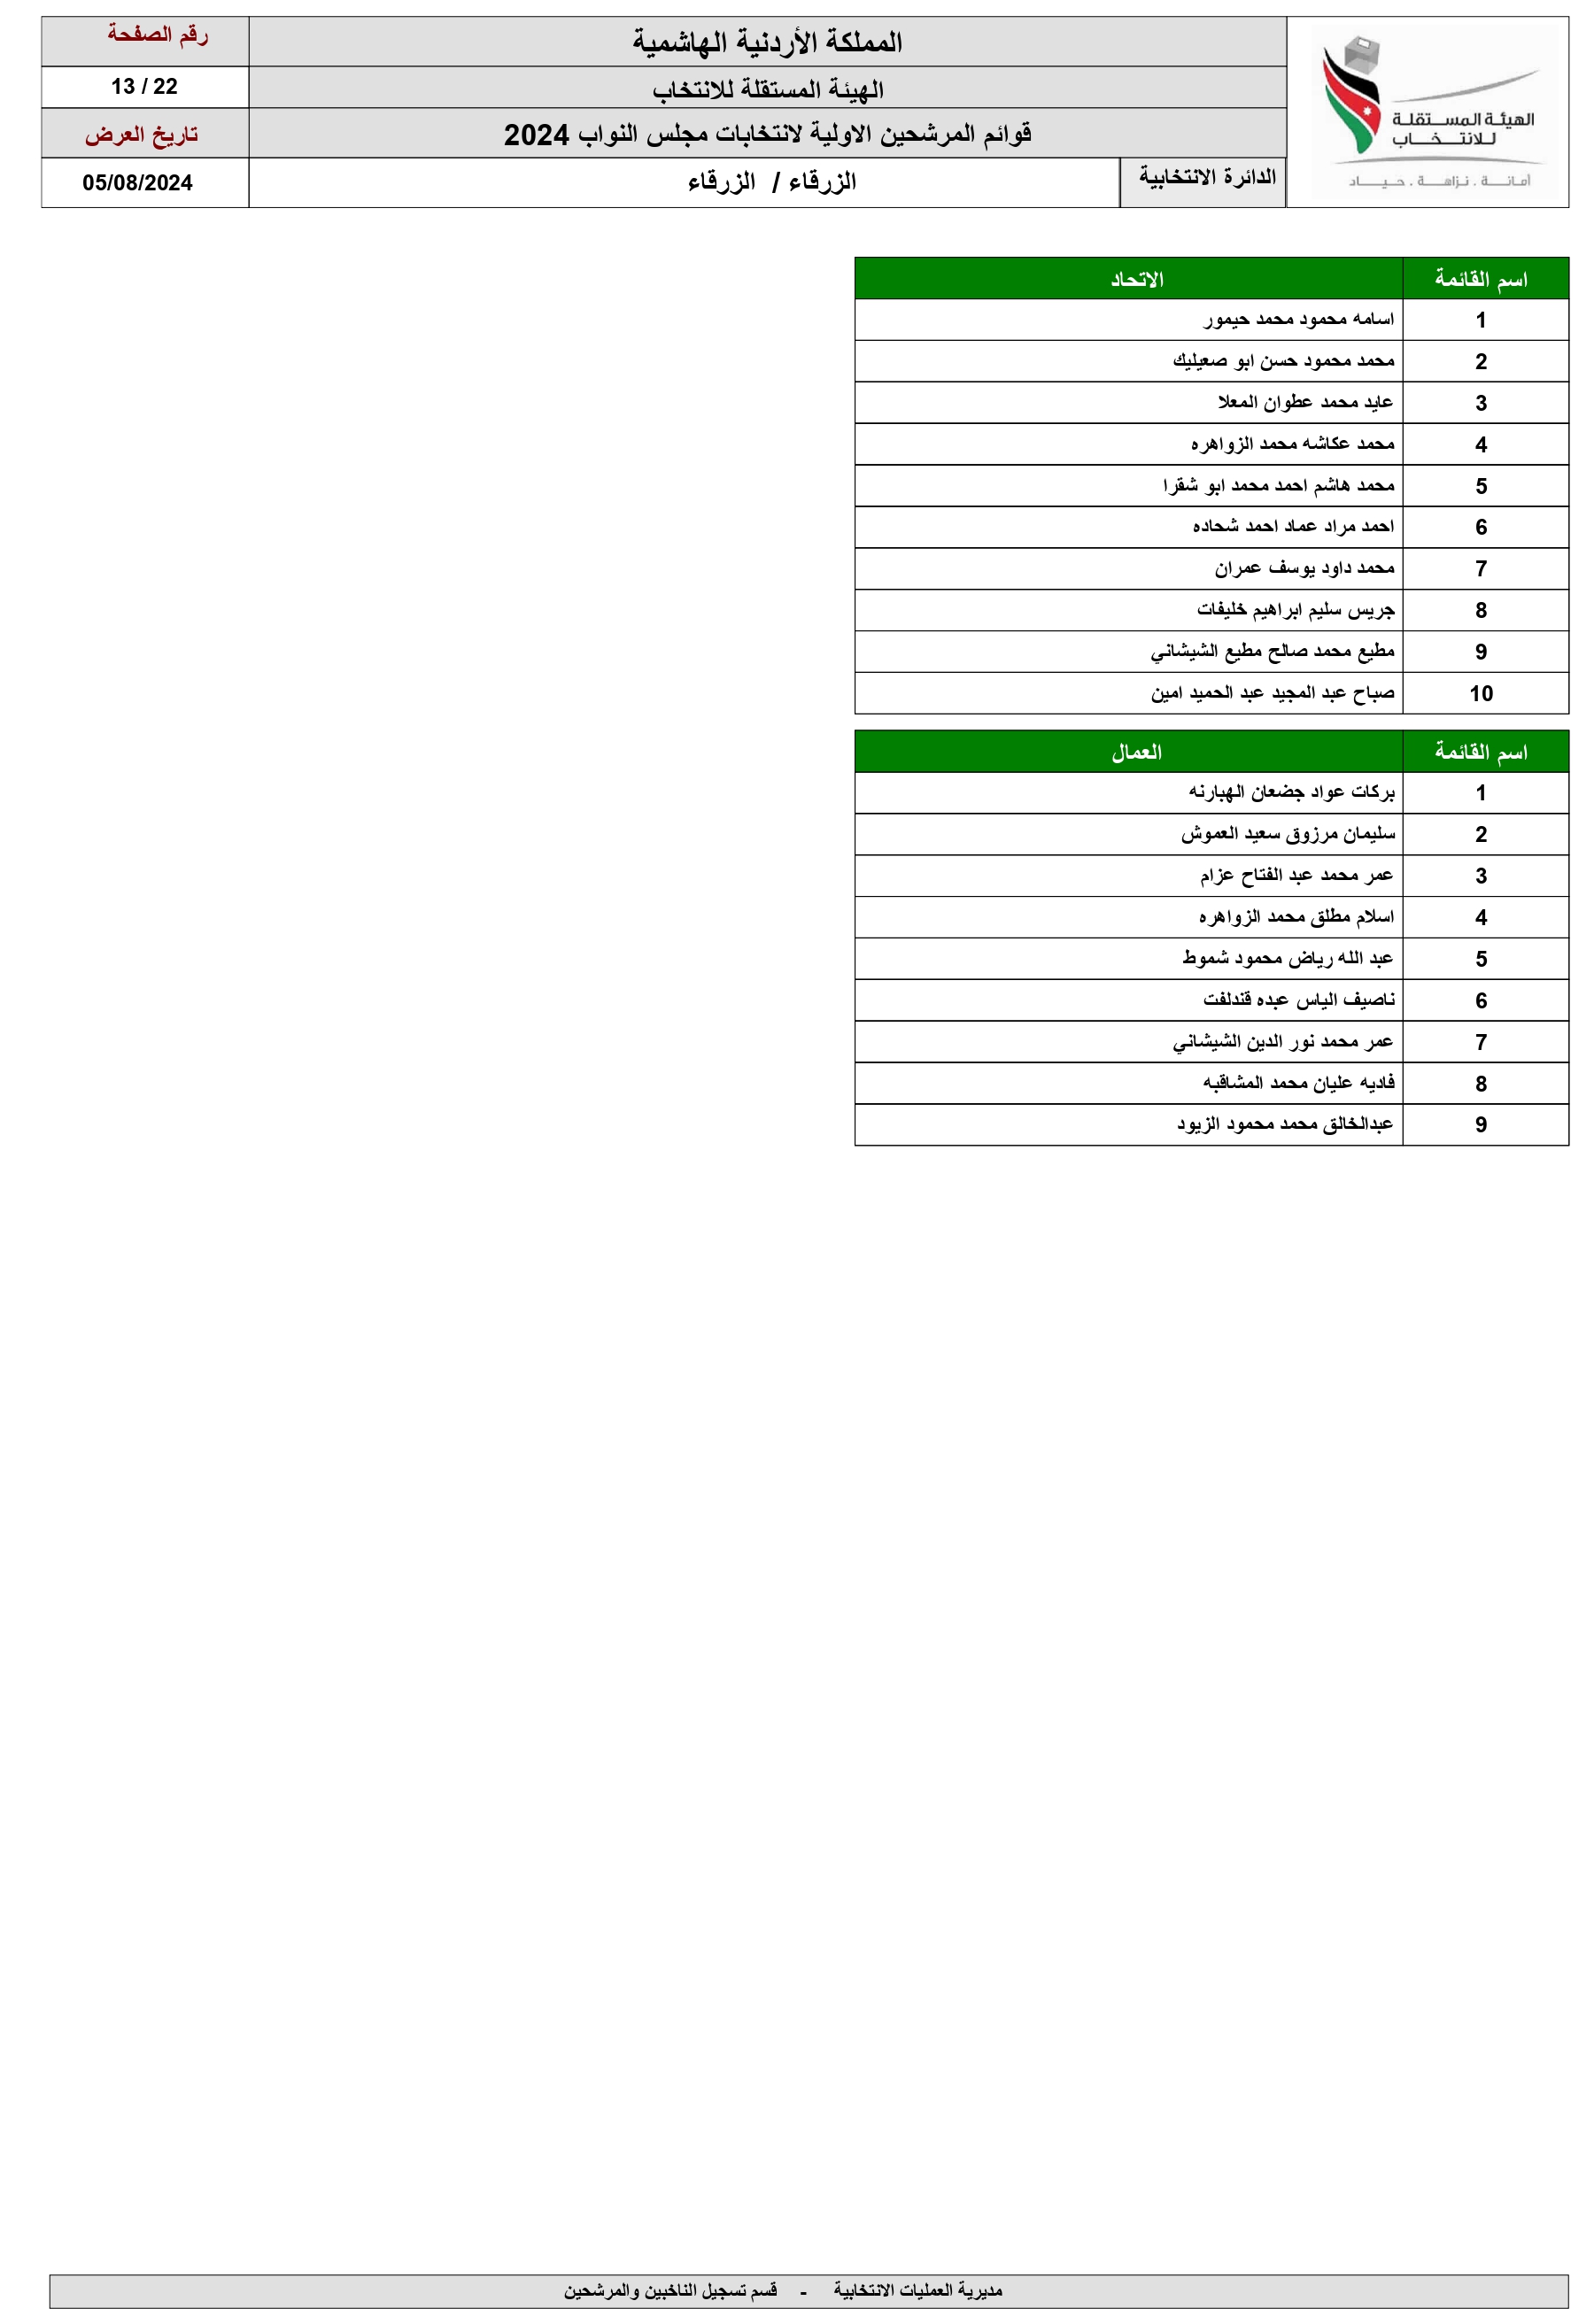 الاردن24 تنشر اسماء المرشحين للانتخابات النيابية ضمن القوائم المحلية والعامة 